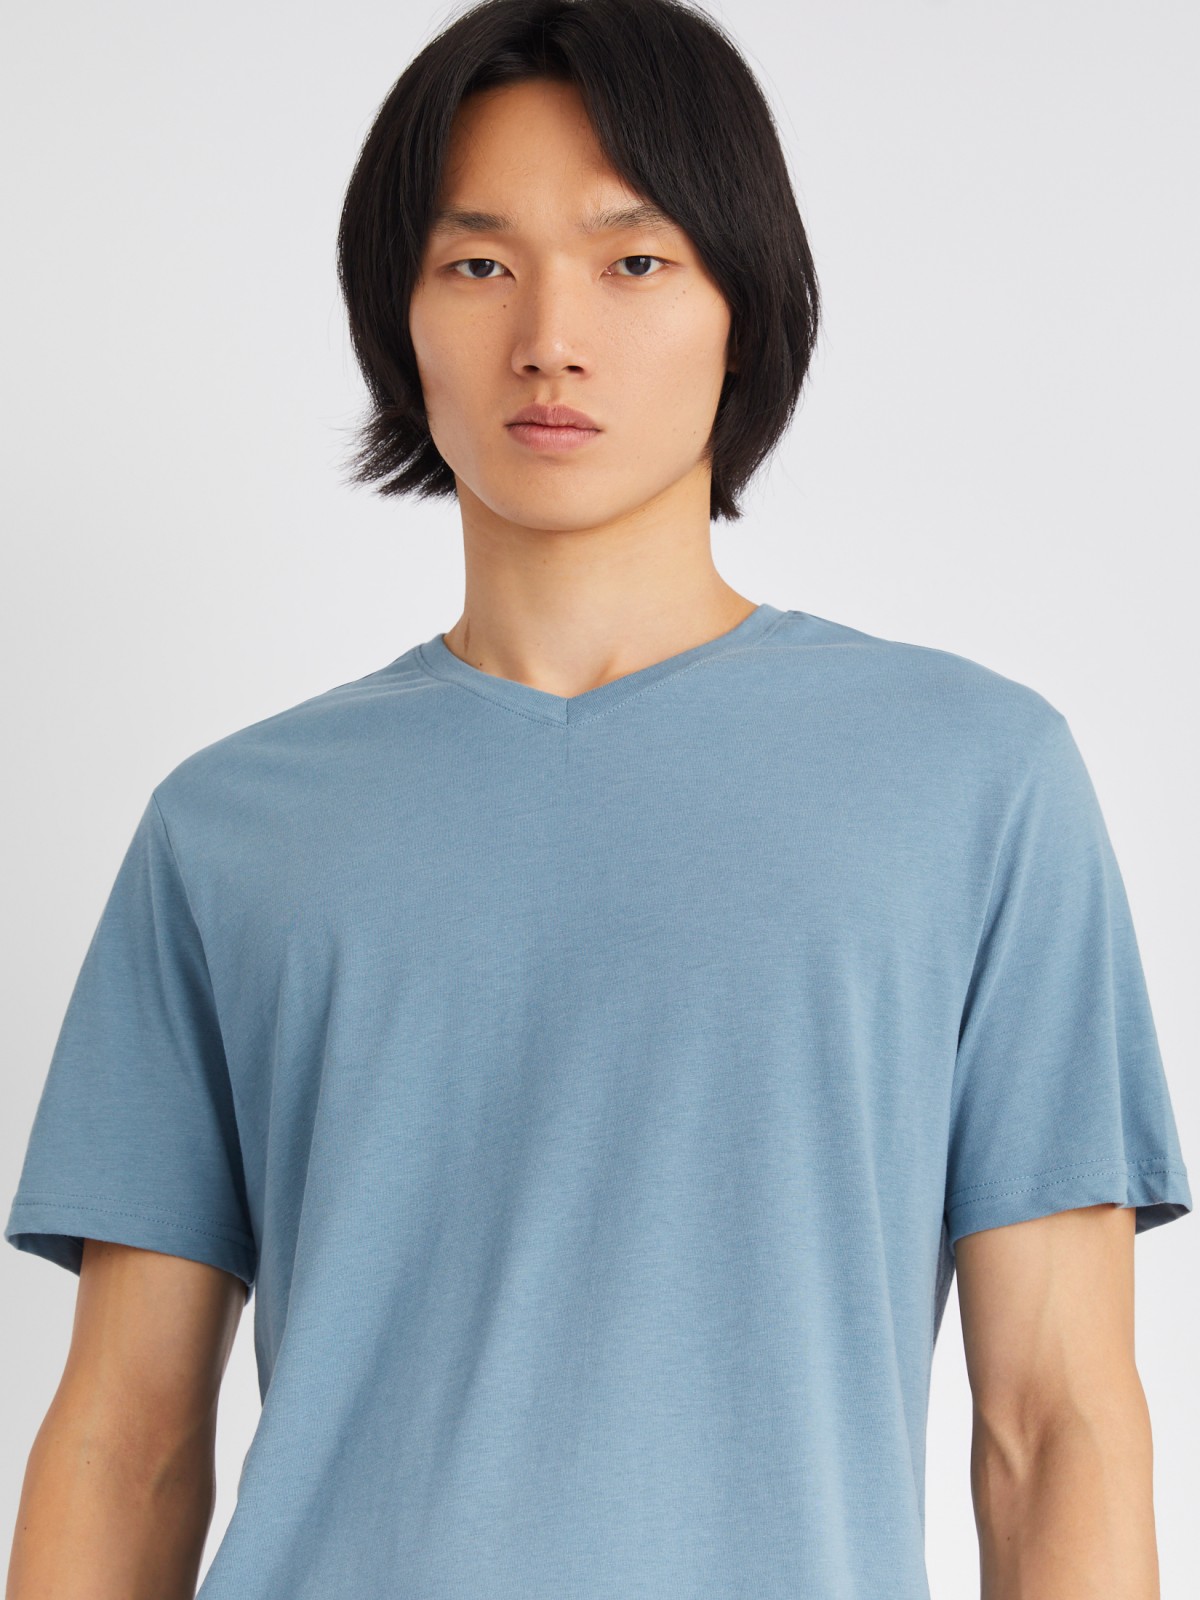 Трикотажная футболка с треугольным вырезом zolla 01331325Q032, цвет голубой, размер XL - фото 3